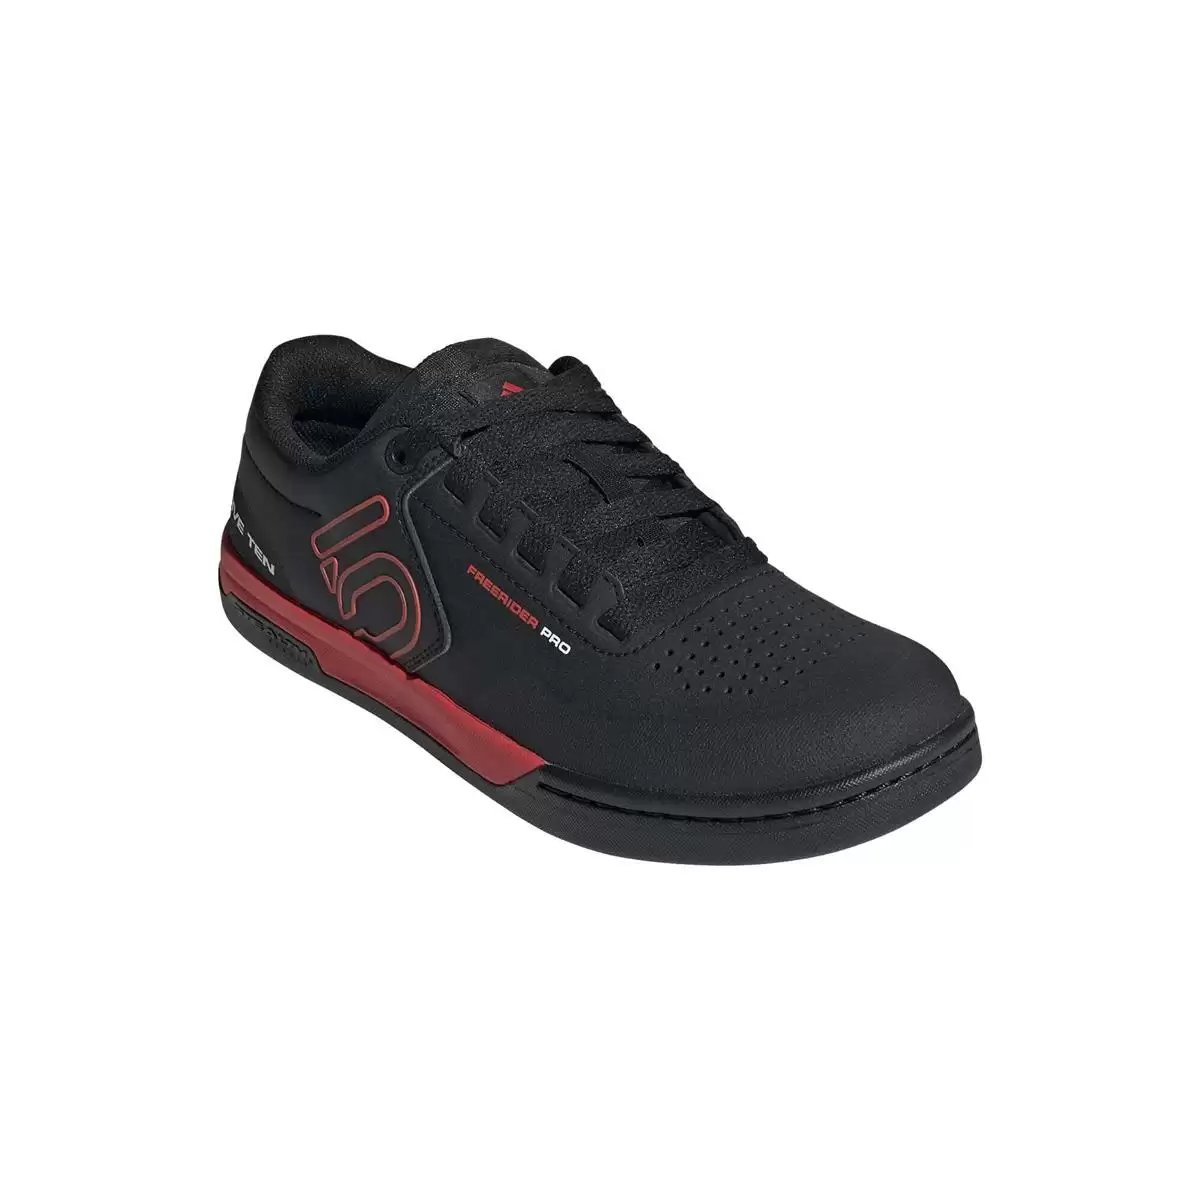 MTB Flache Schuhe Freerider Pro Schwarz/Rot Größe 44,5 #1